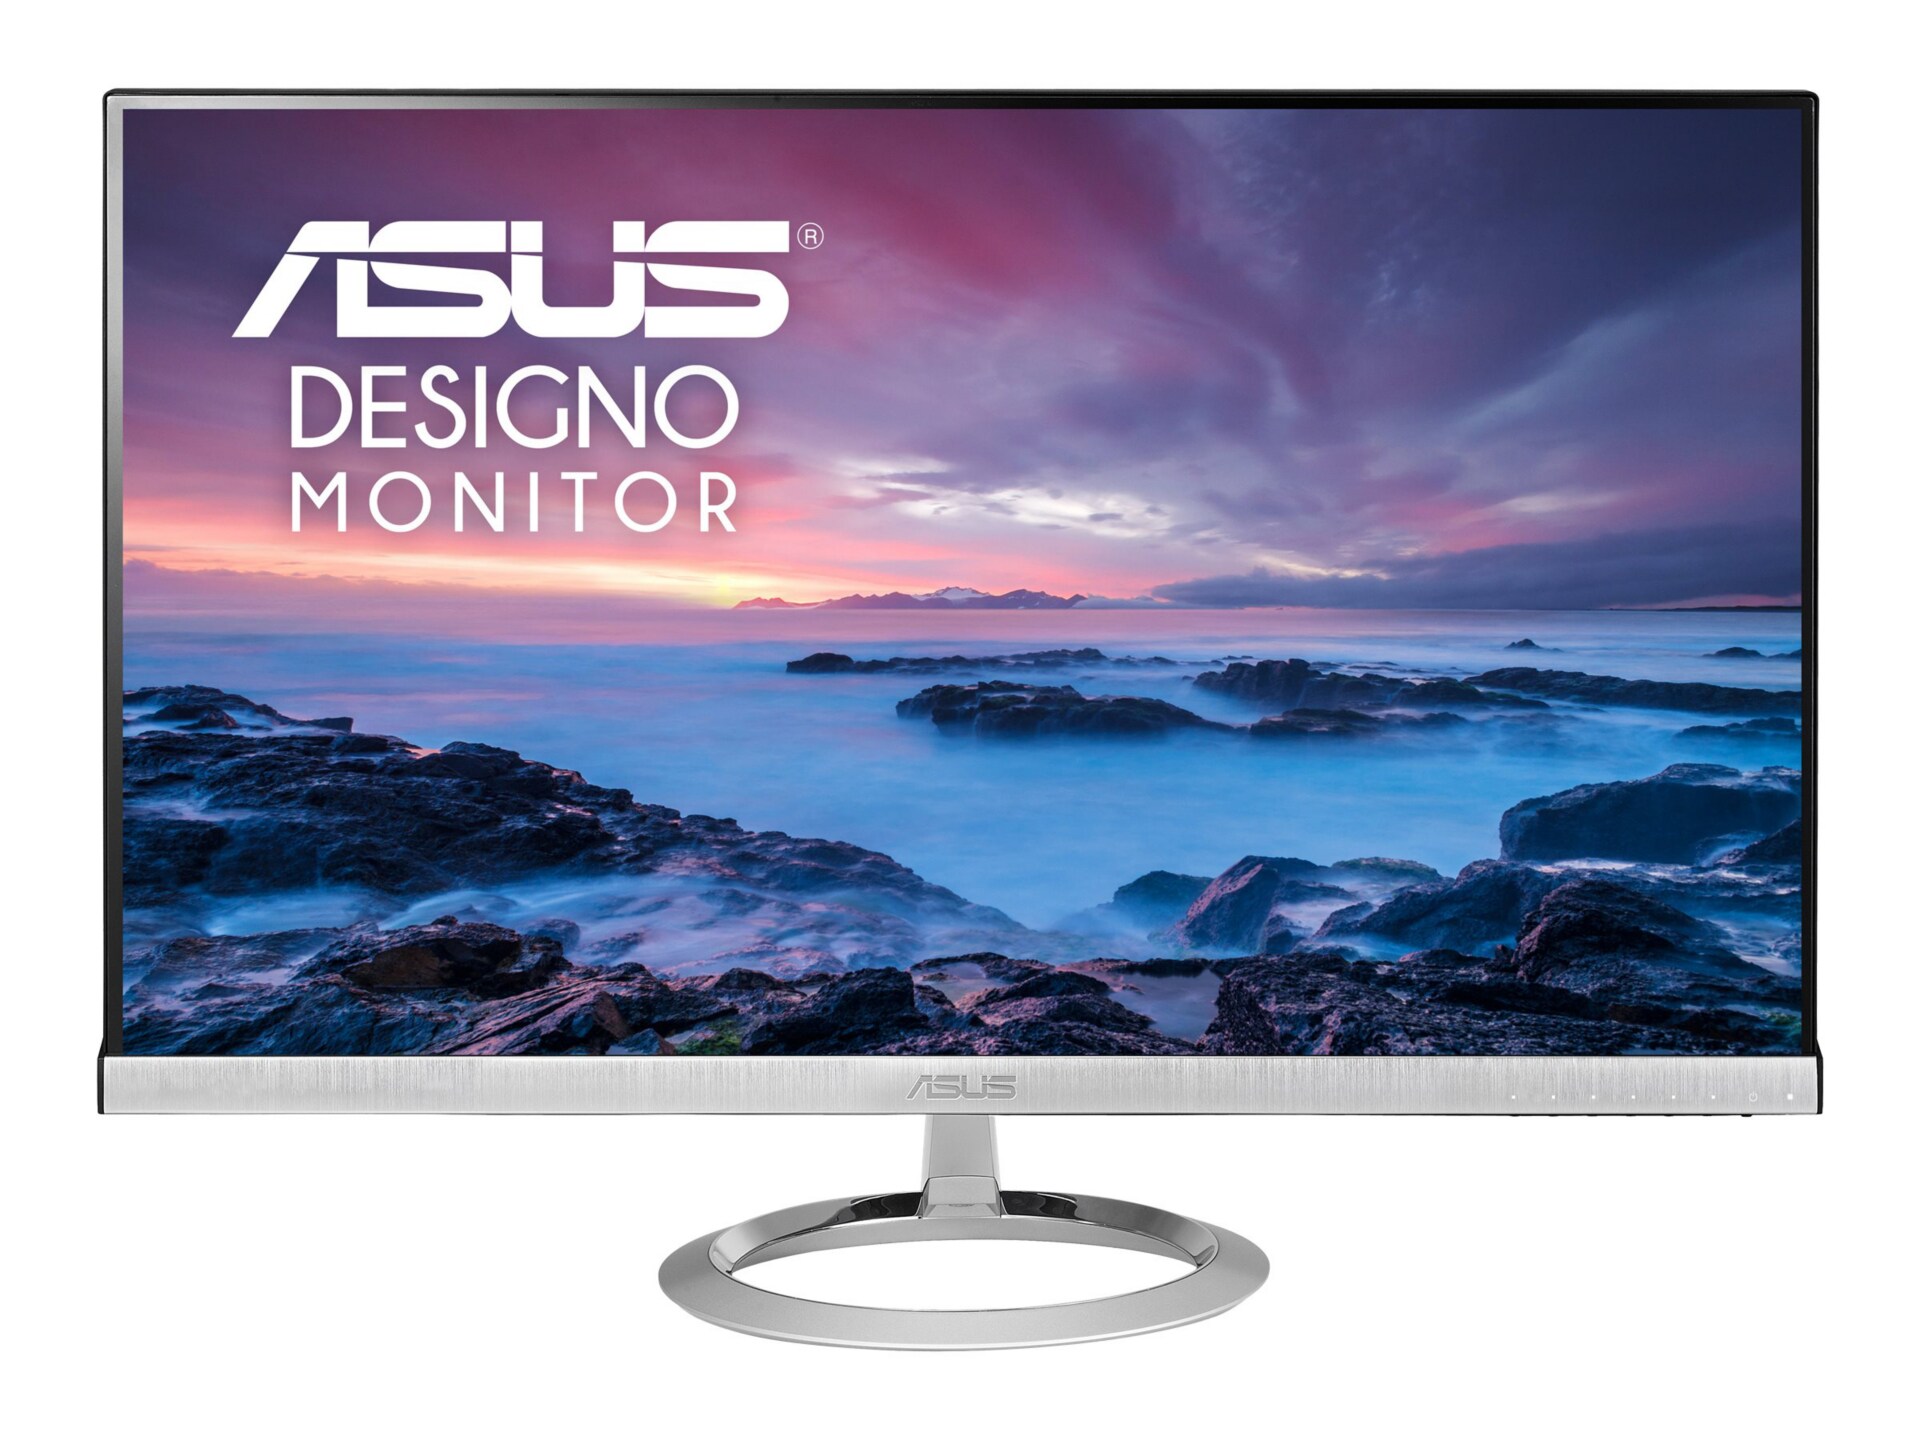 Asus Designo MX259HS - LED monitor - Full HD (1080p) - 25"